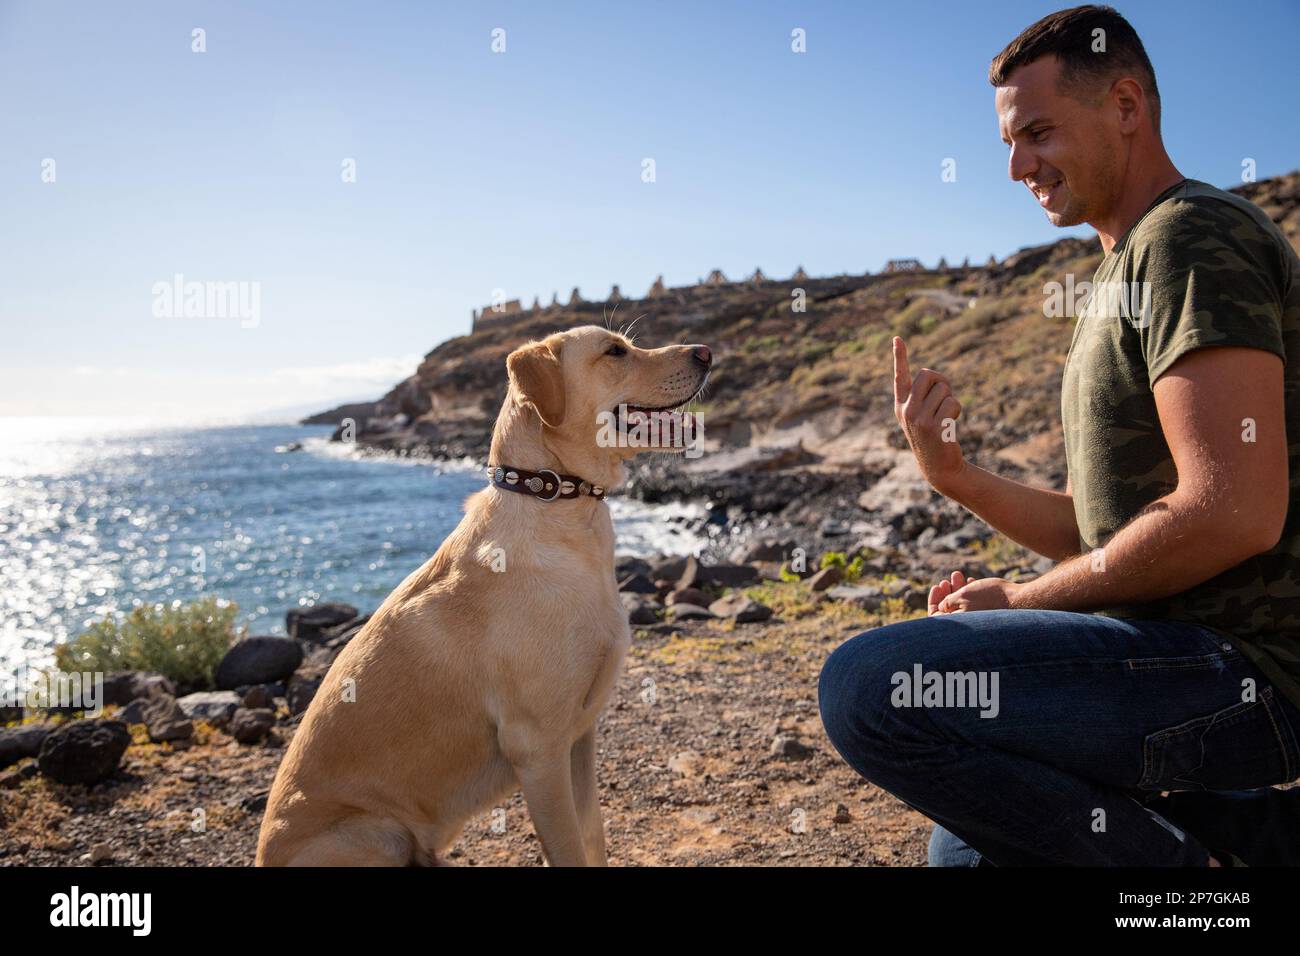 Un entrenador de perros hace gestos con la mano delante de un perro durante una sesión de entrenamiento. Foto de stock